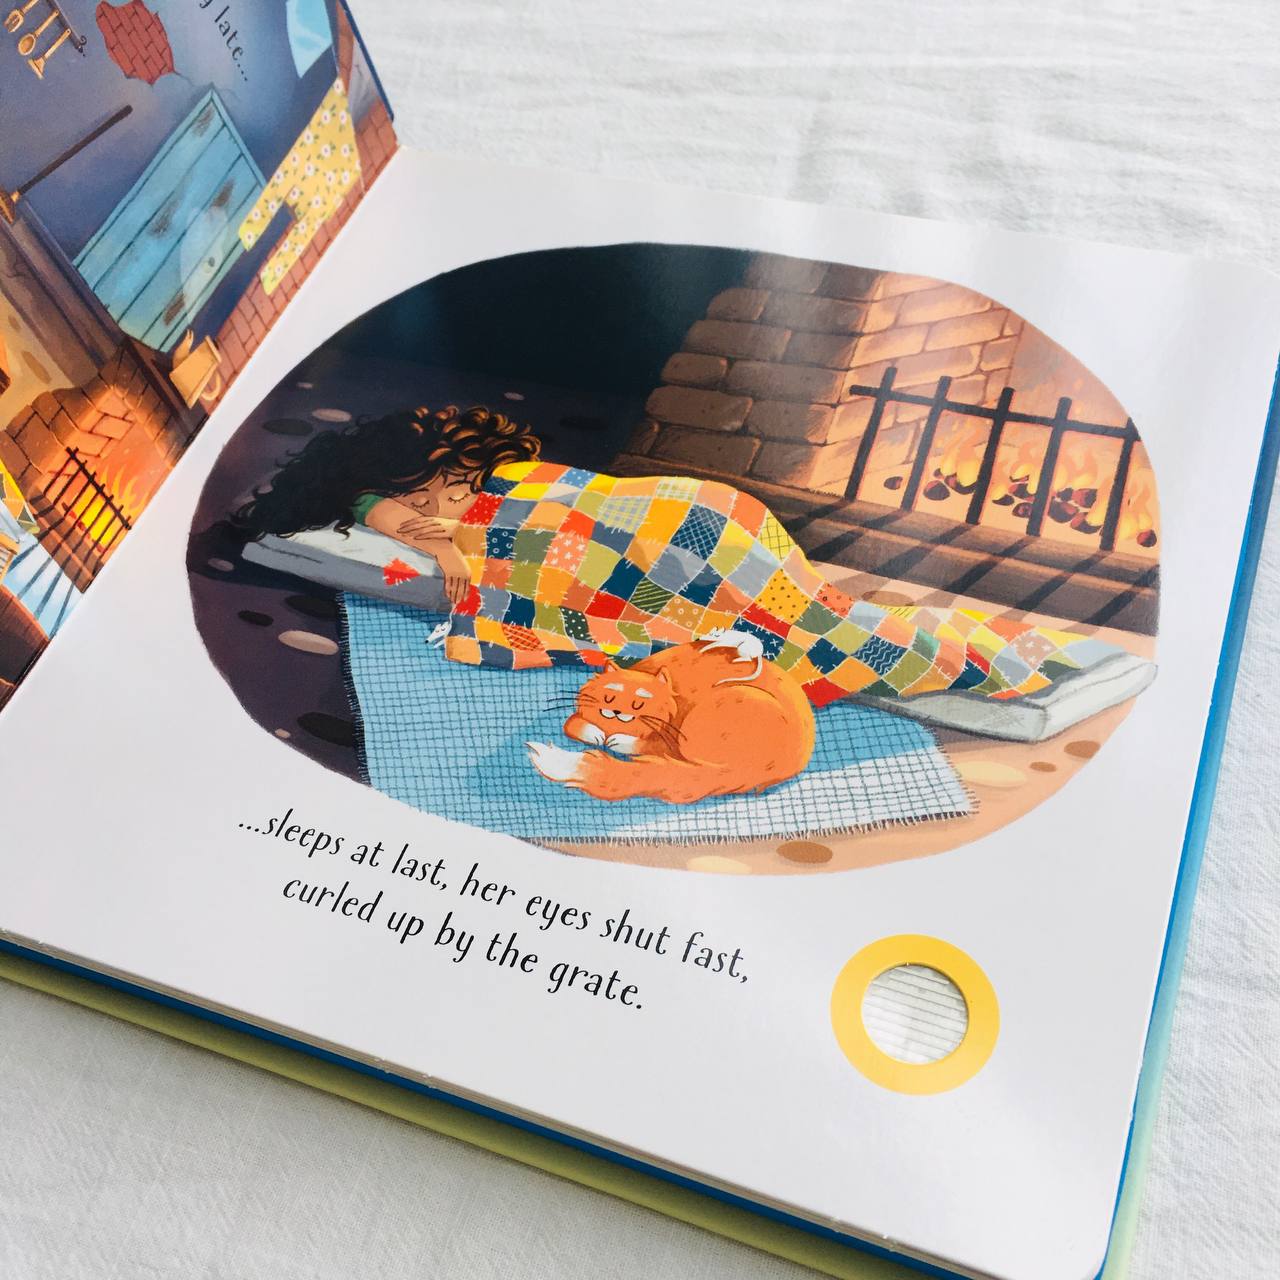 Tuyển tập sách tiếng Anh có âm thanh cho bé nghe và đọc theo sách | Usborne books Listen and Read Story Books